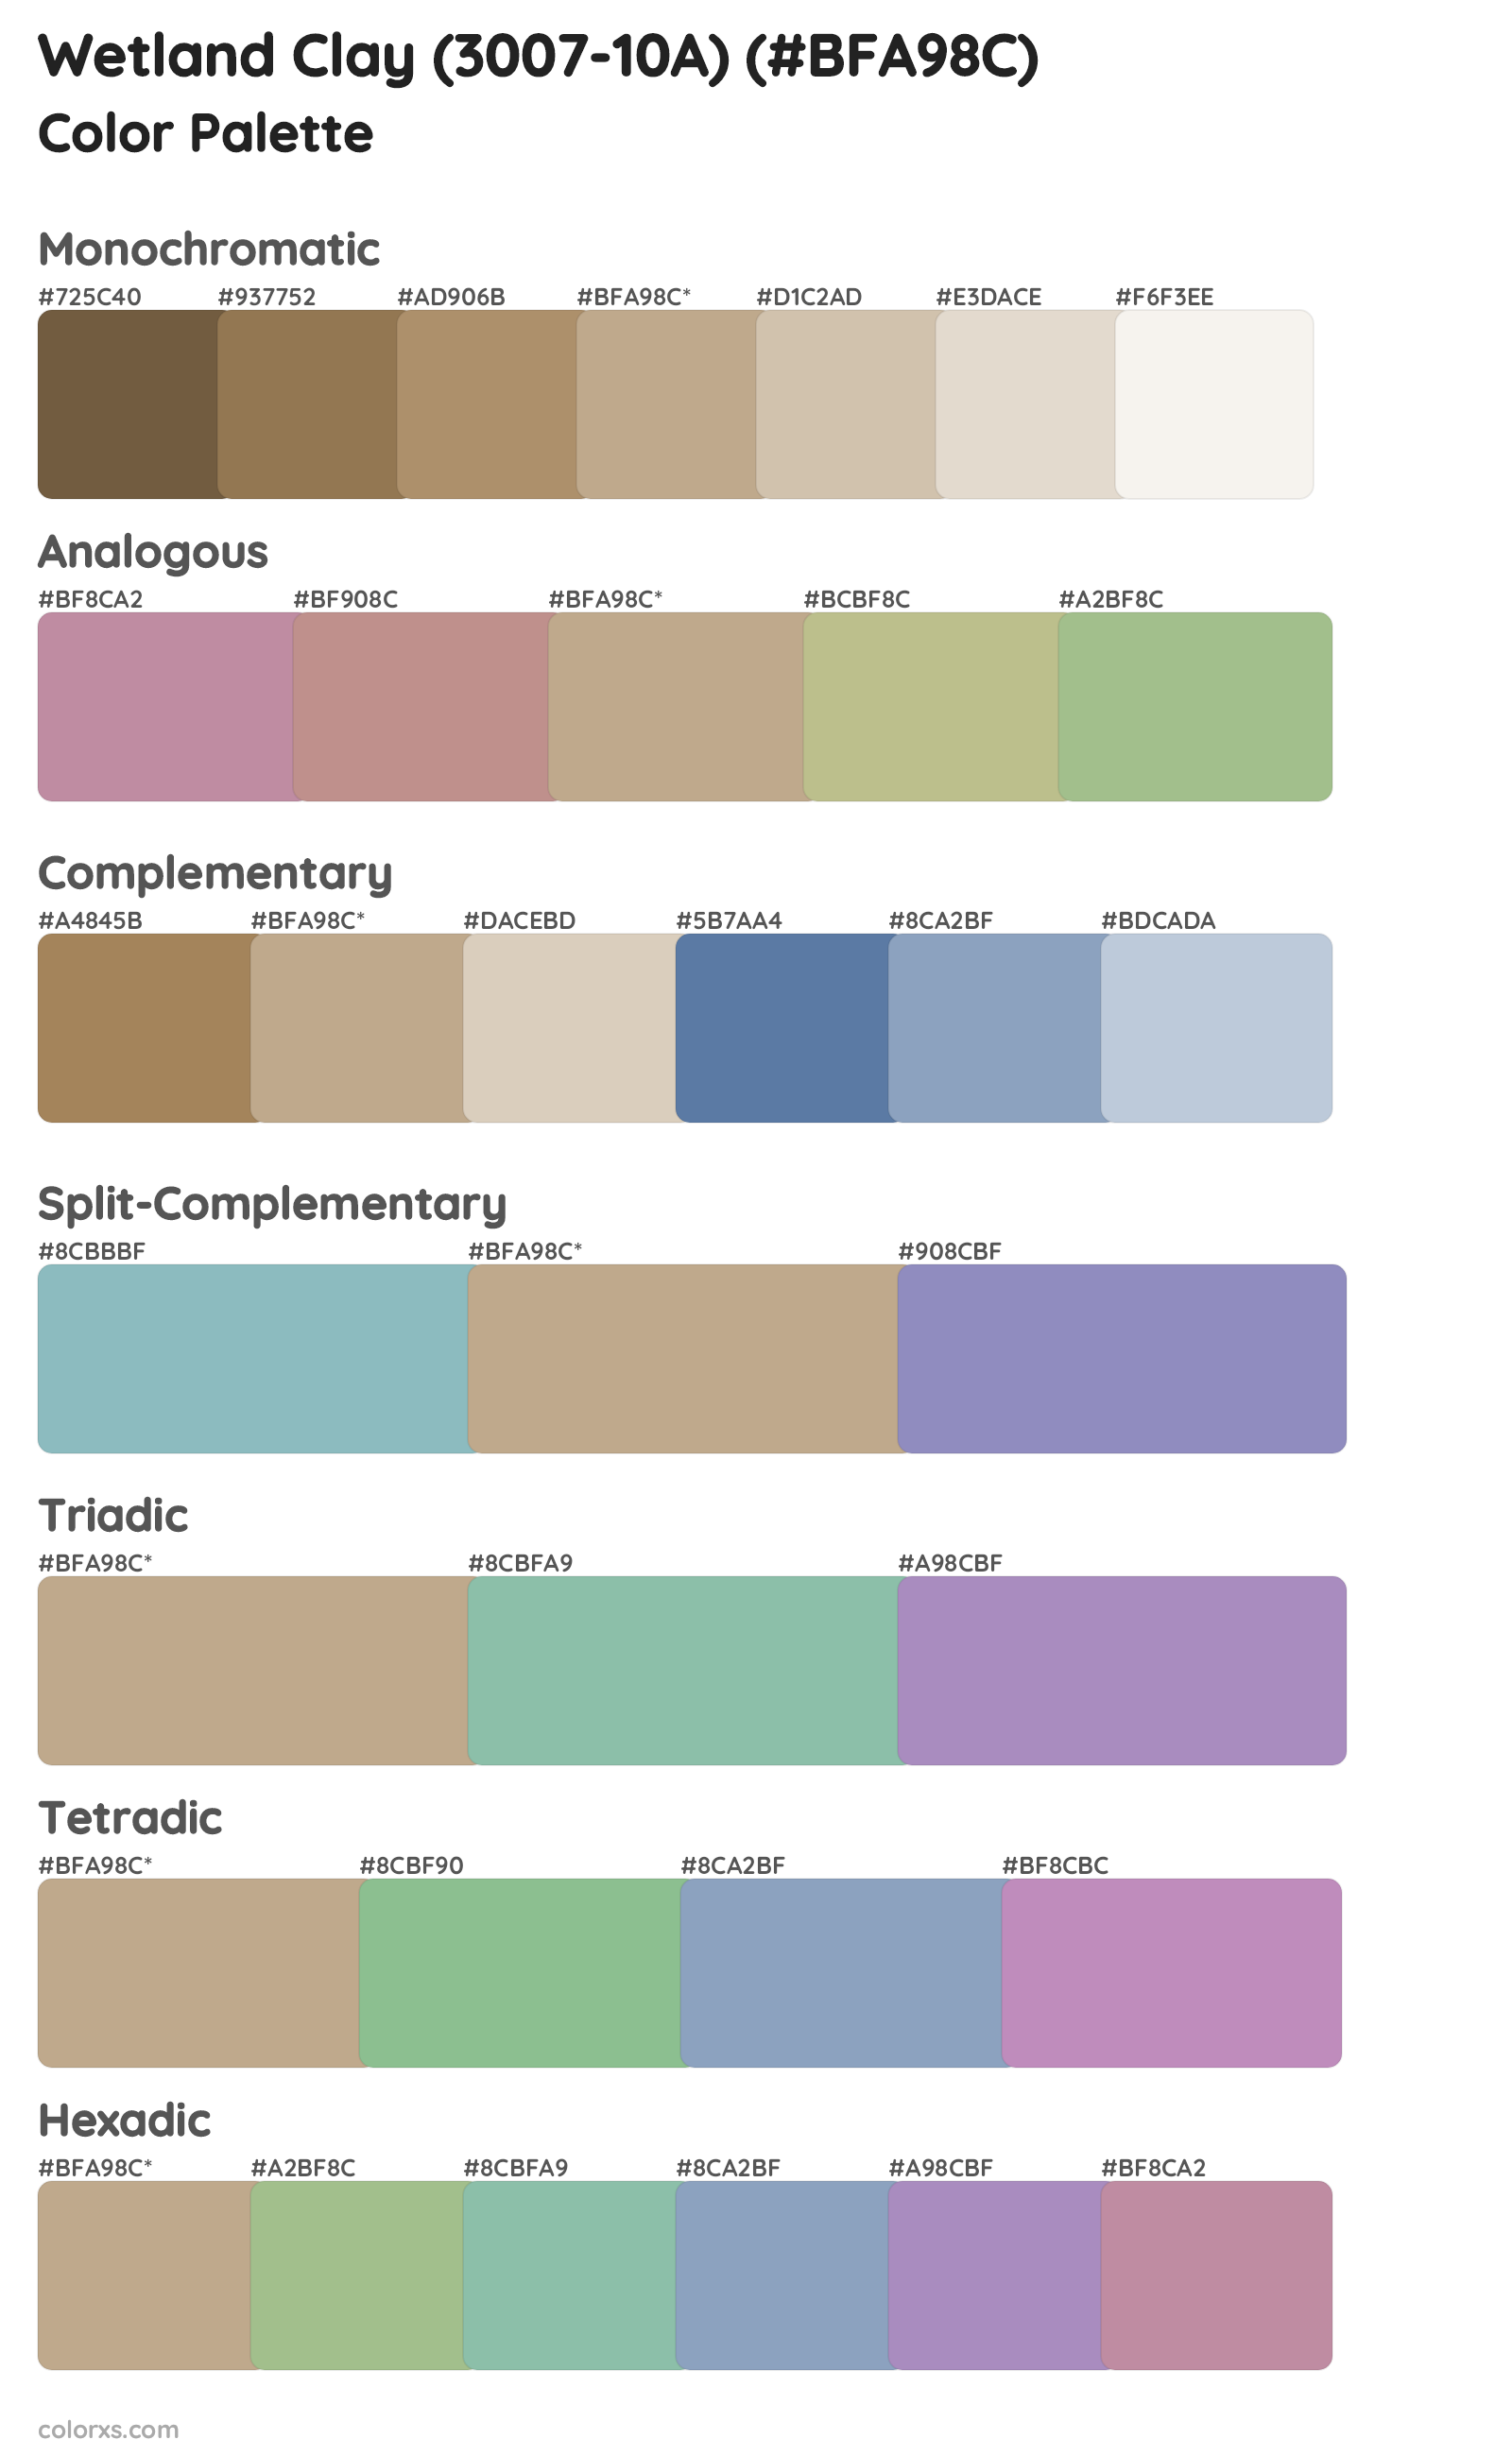 Wetland Clay (3007-10A) Color Scheme Palettes